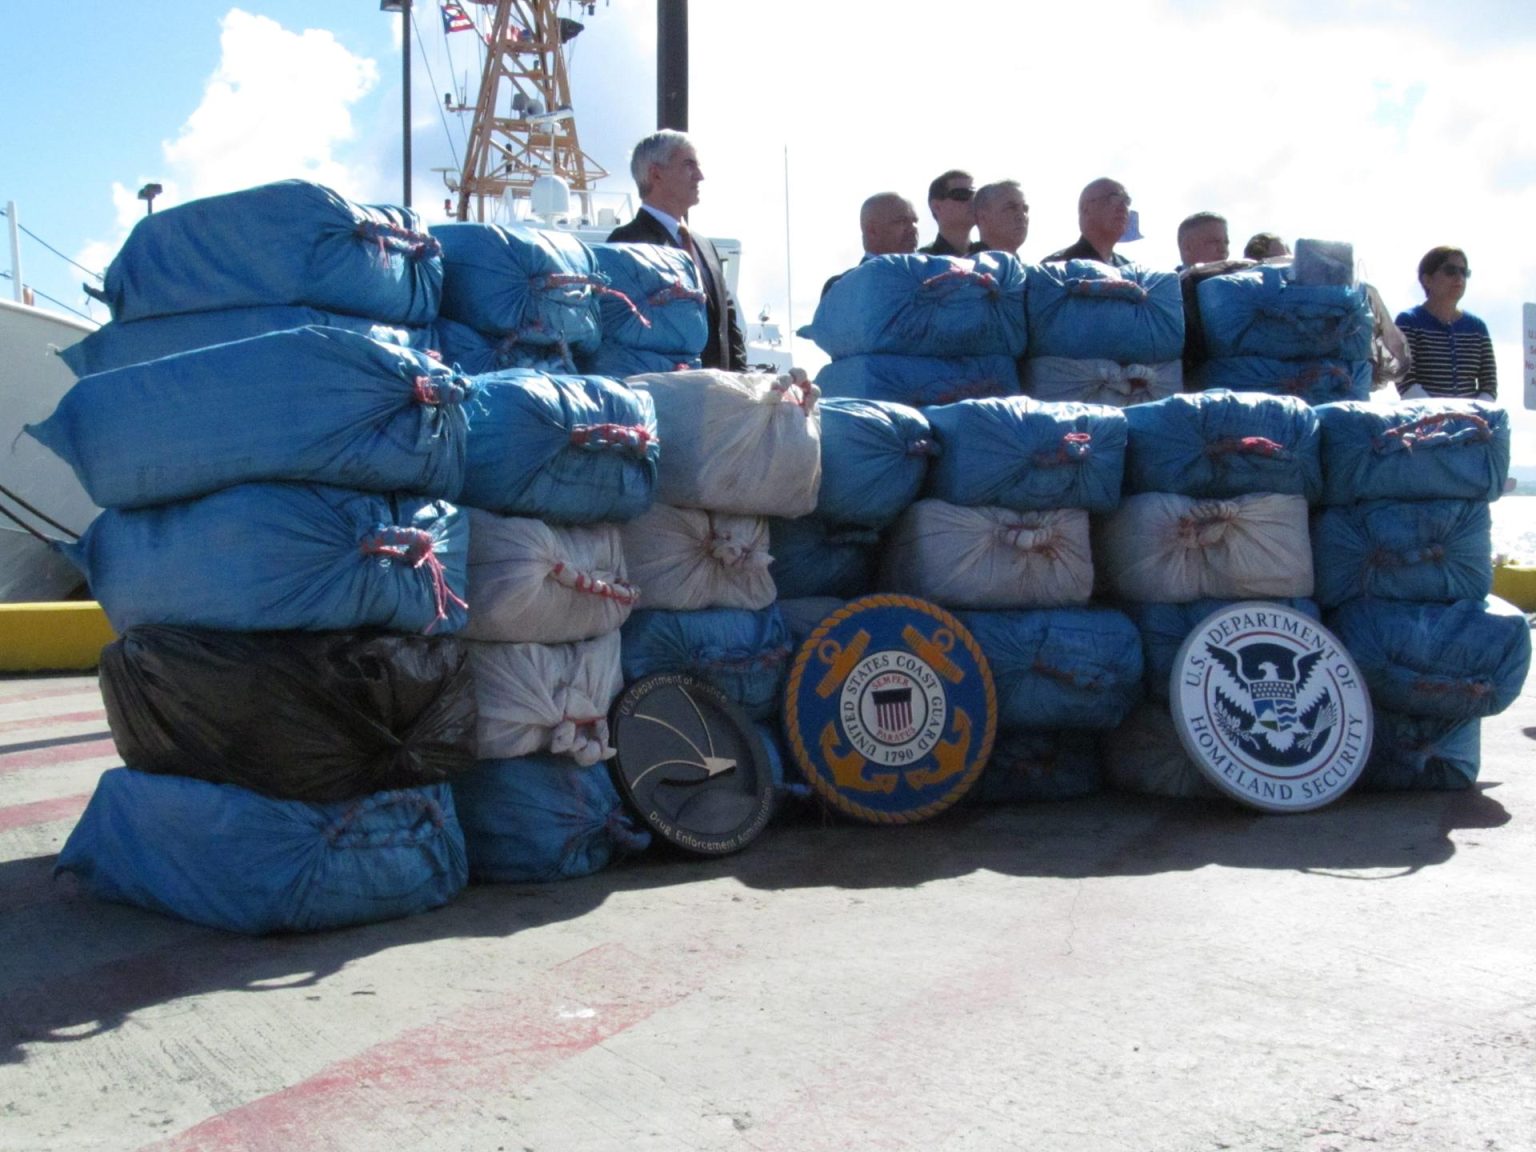 La Policía de Puerto Rico informó este sábado que ocupó 254 kilos de cocaína y detuvo a dos personas vinculadas con el cargamento de droga. Imagen de archivo. EFE/JORGE MUÑIZ